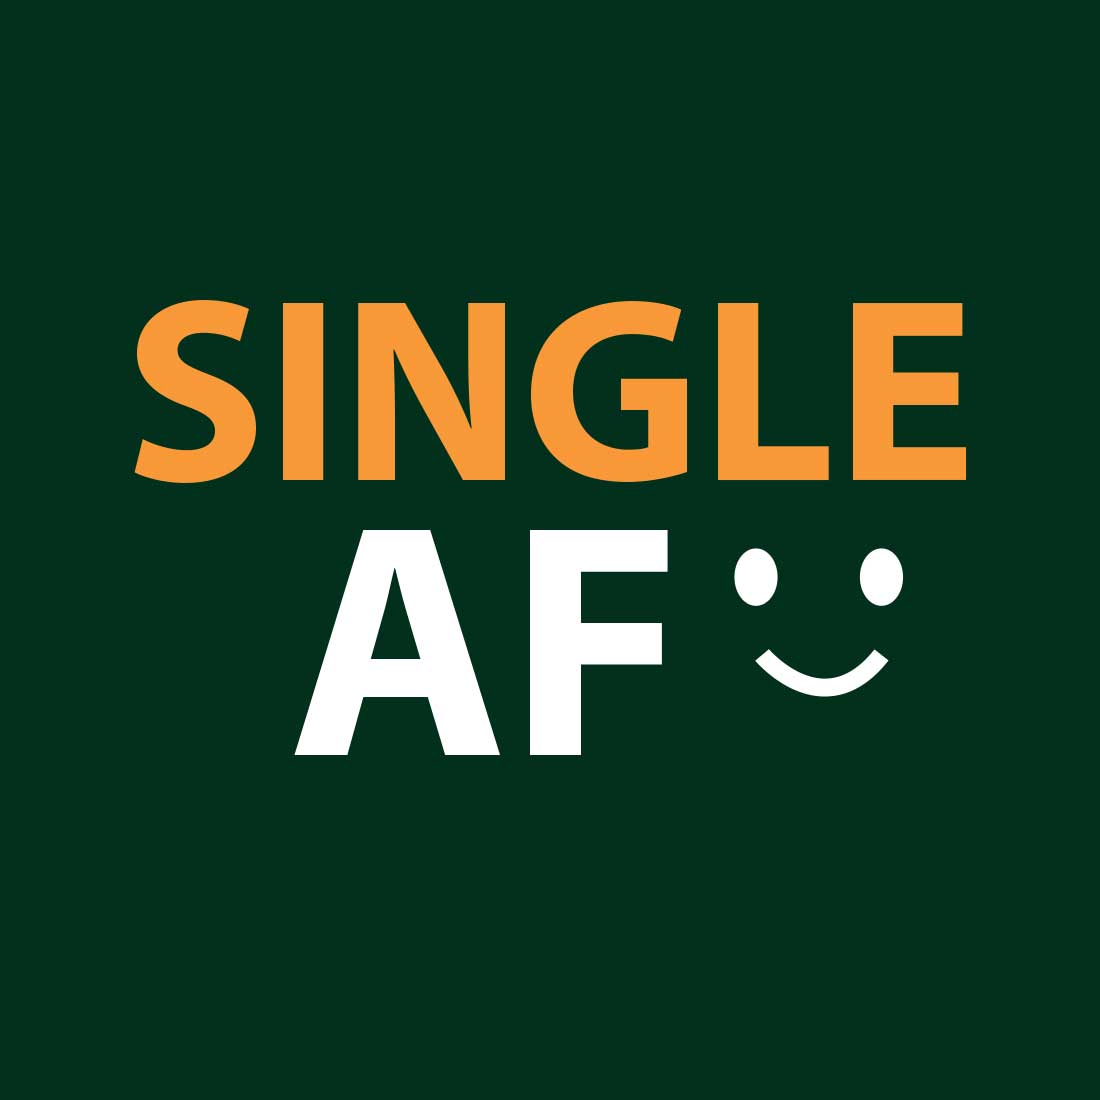 Single AF Green Men T-Shirt